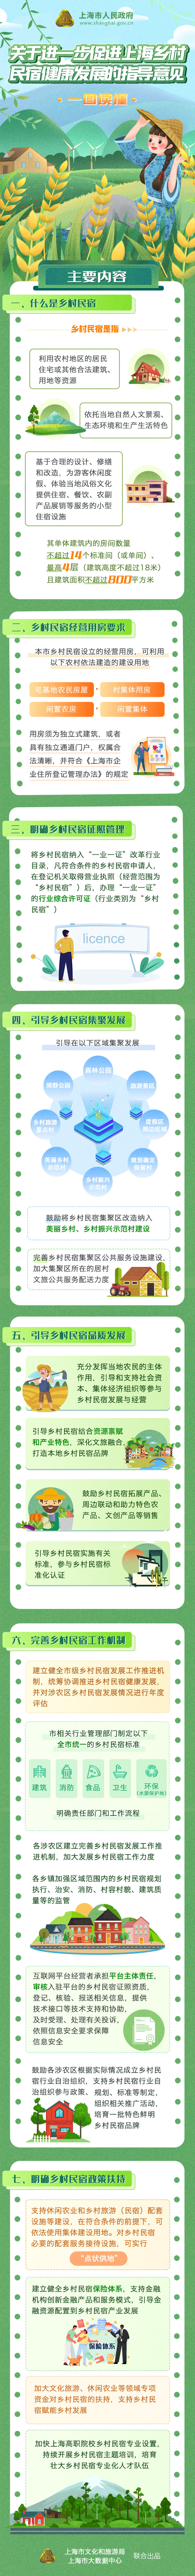 《关于进一步促进上海乡村民宿健康发展的指导意见》.jpg